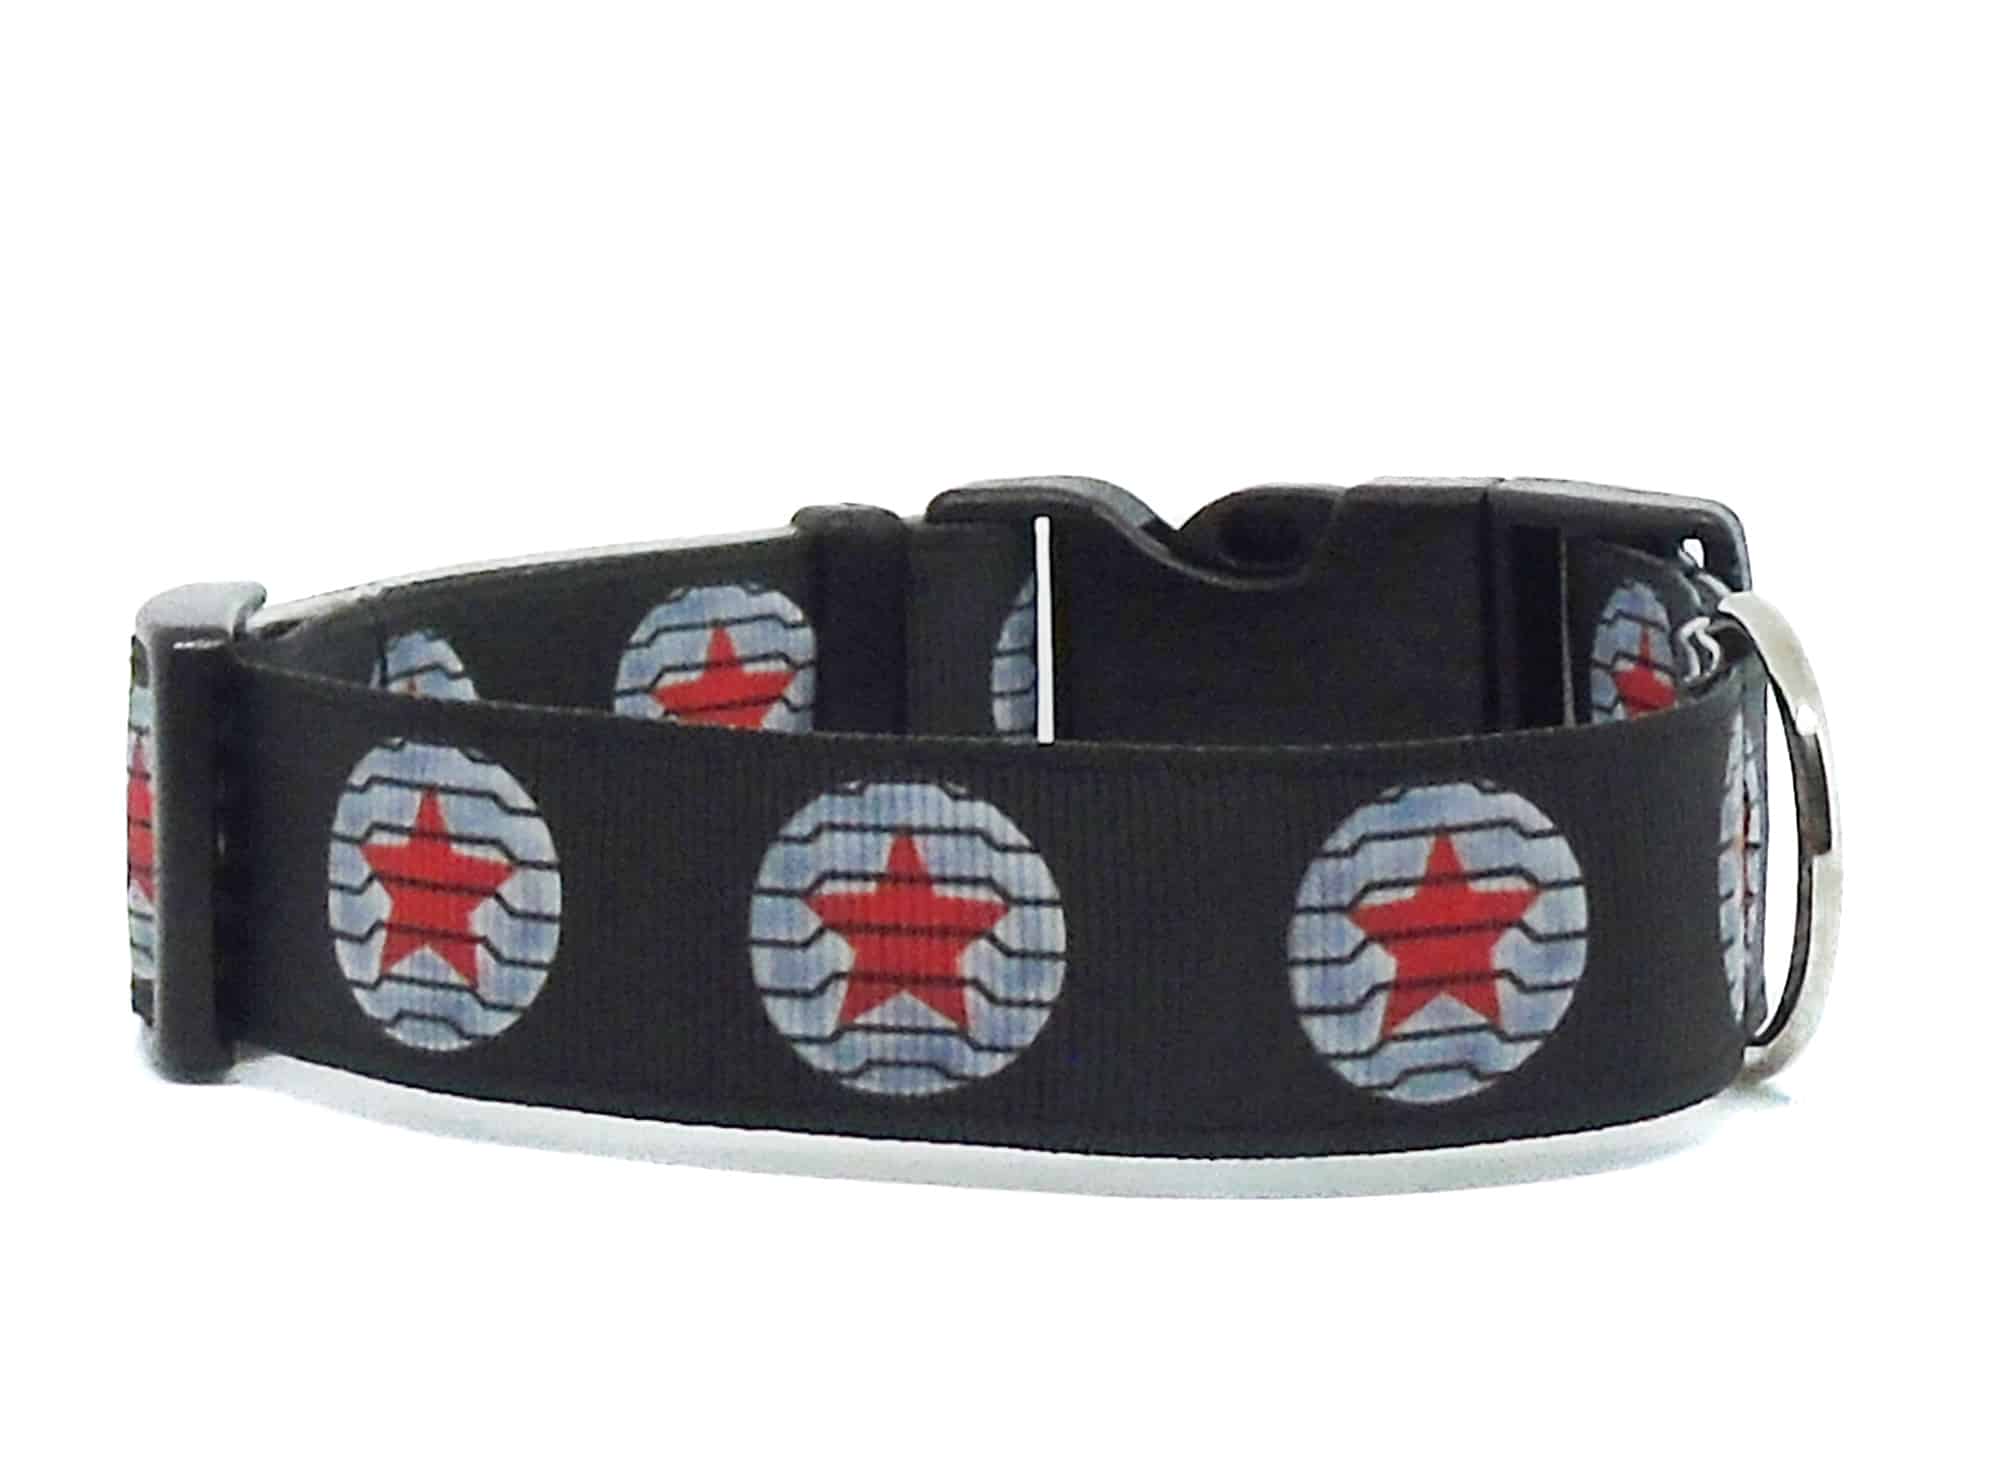 Winter Soldier dog collar